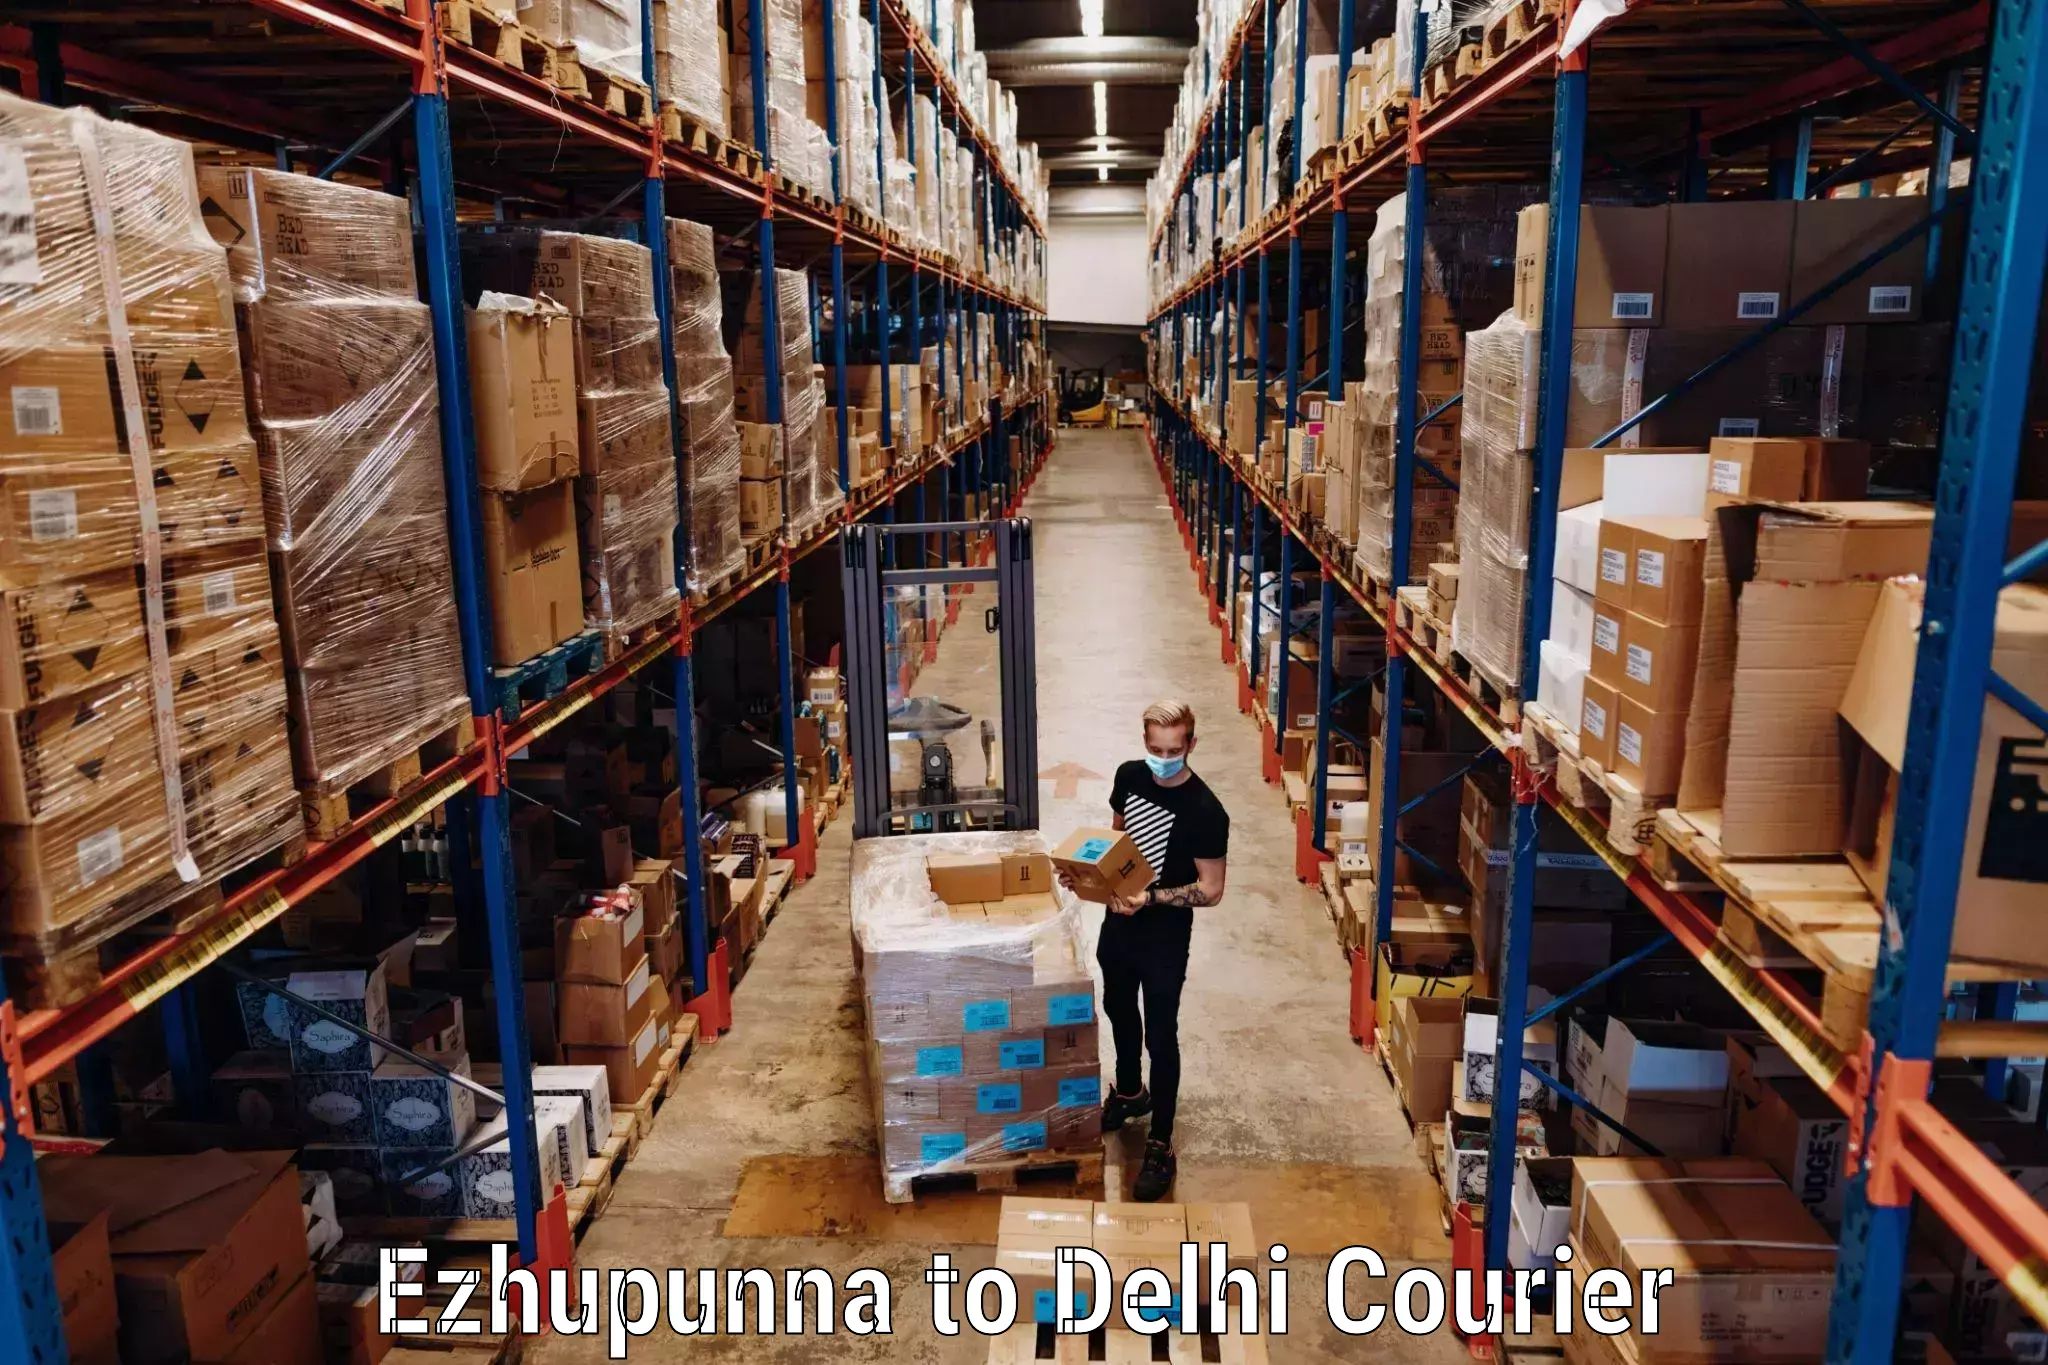 Door-to-door baggage service Ezhupunna to Delhi